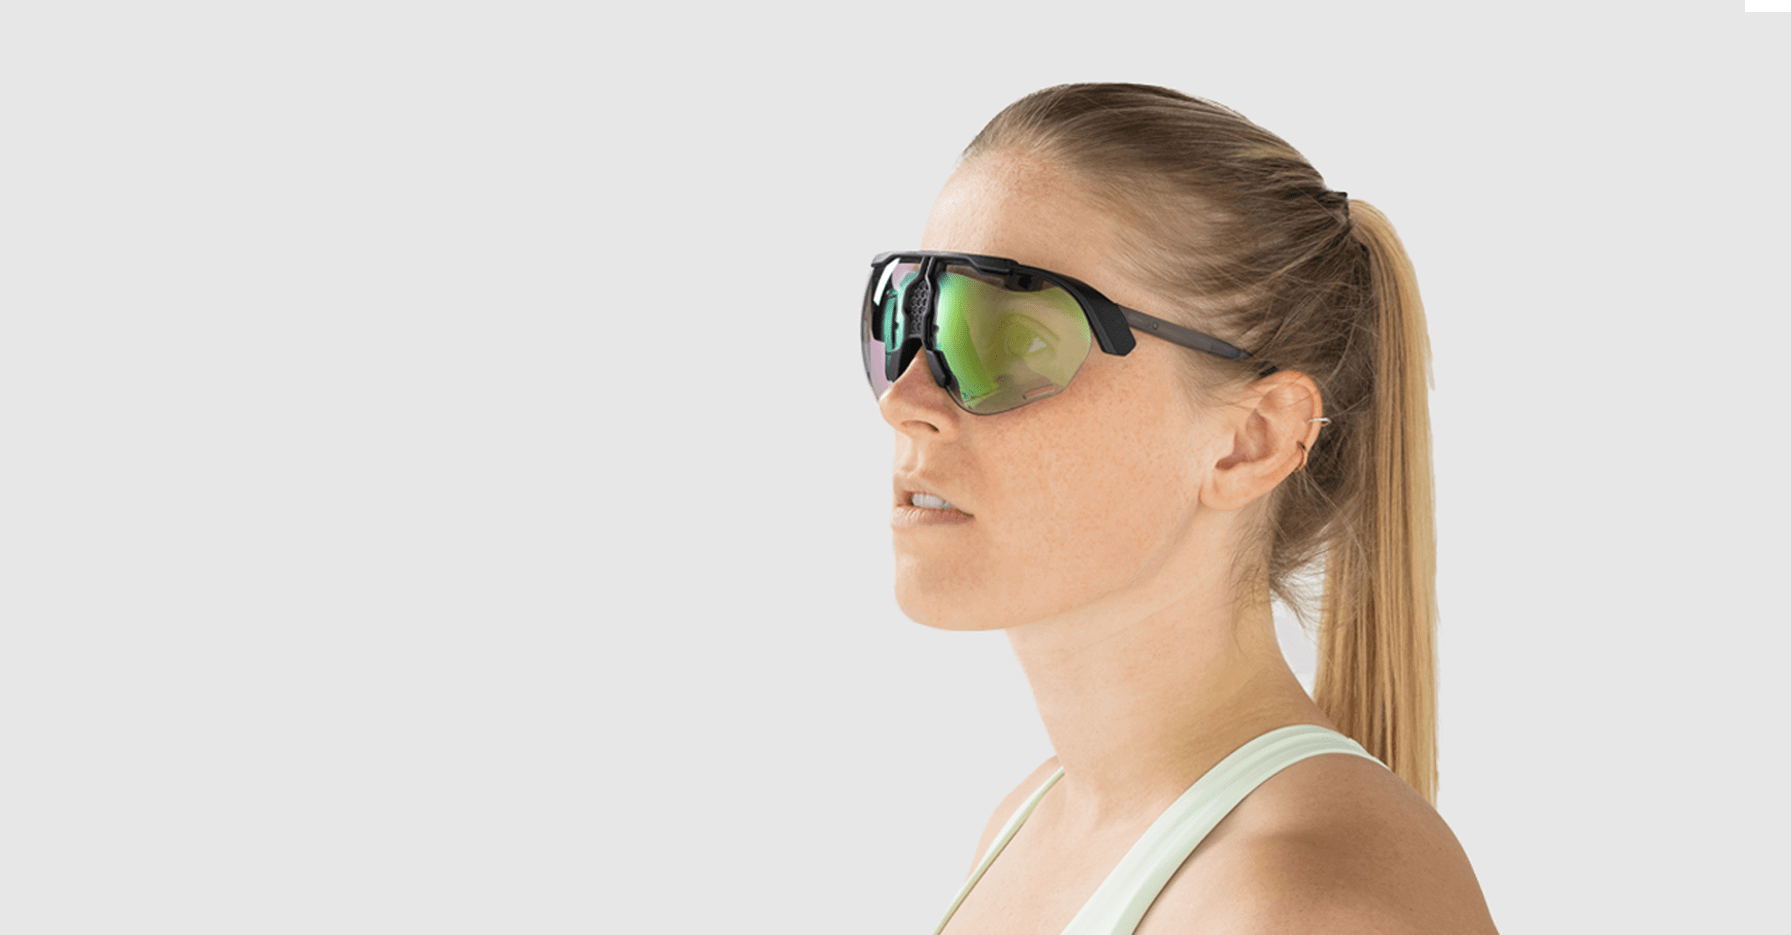 CES 2022: Engo-1 – Superleichte AR-Brille für ein verbessertes  Sporterlebnis, powered by Activelook – MYC Media – hardware for life